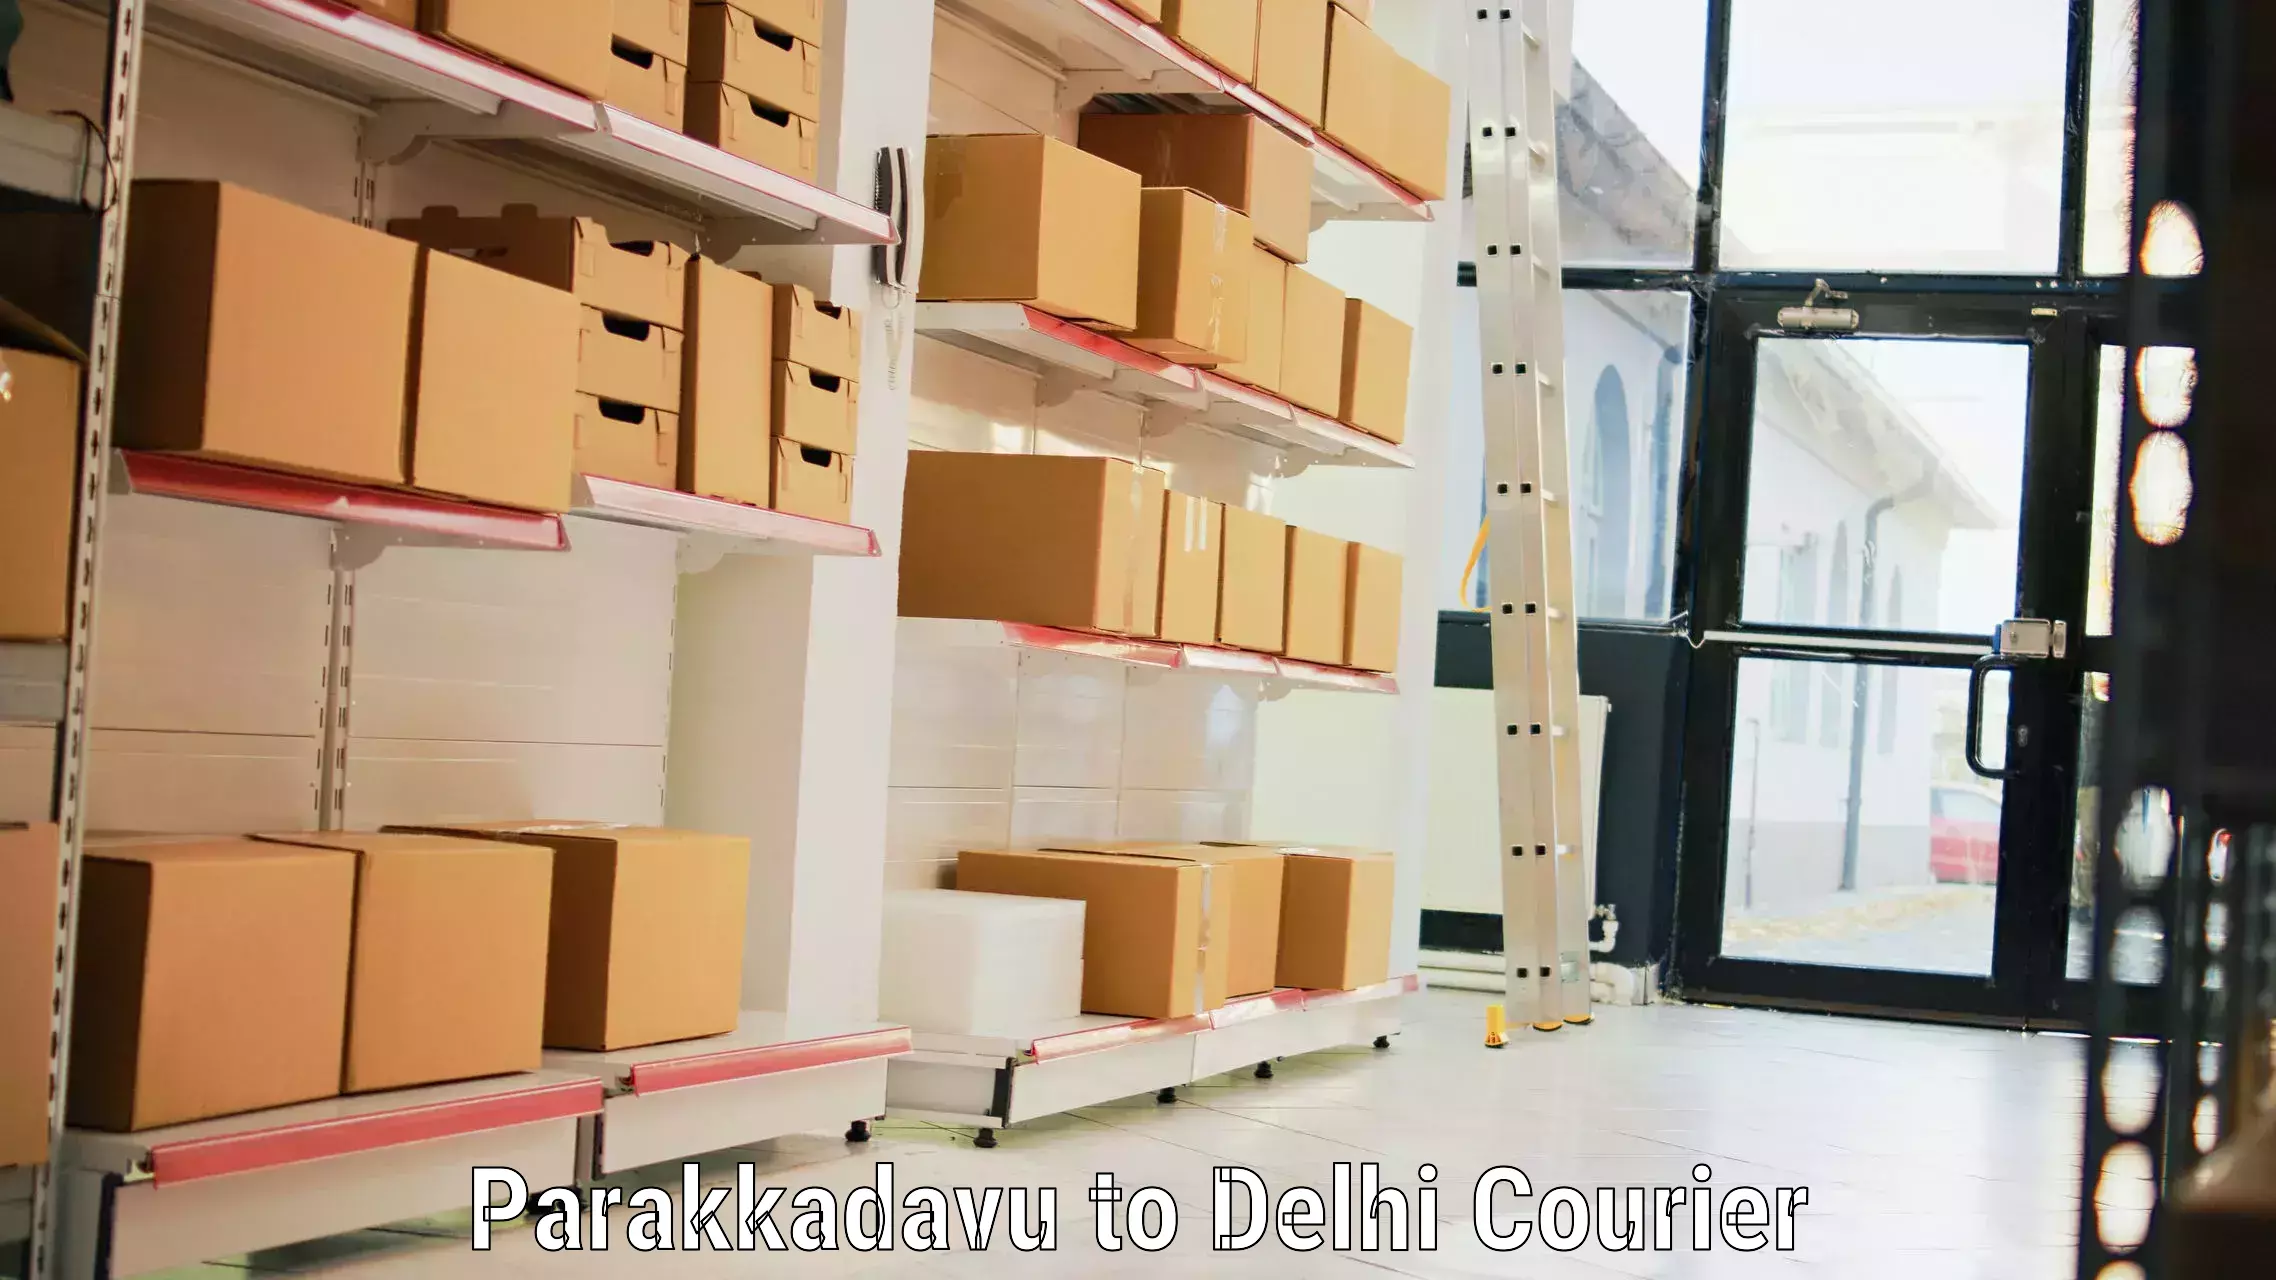 Baggage shipping service Parakkadavu to Delhi